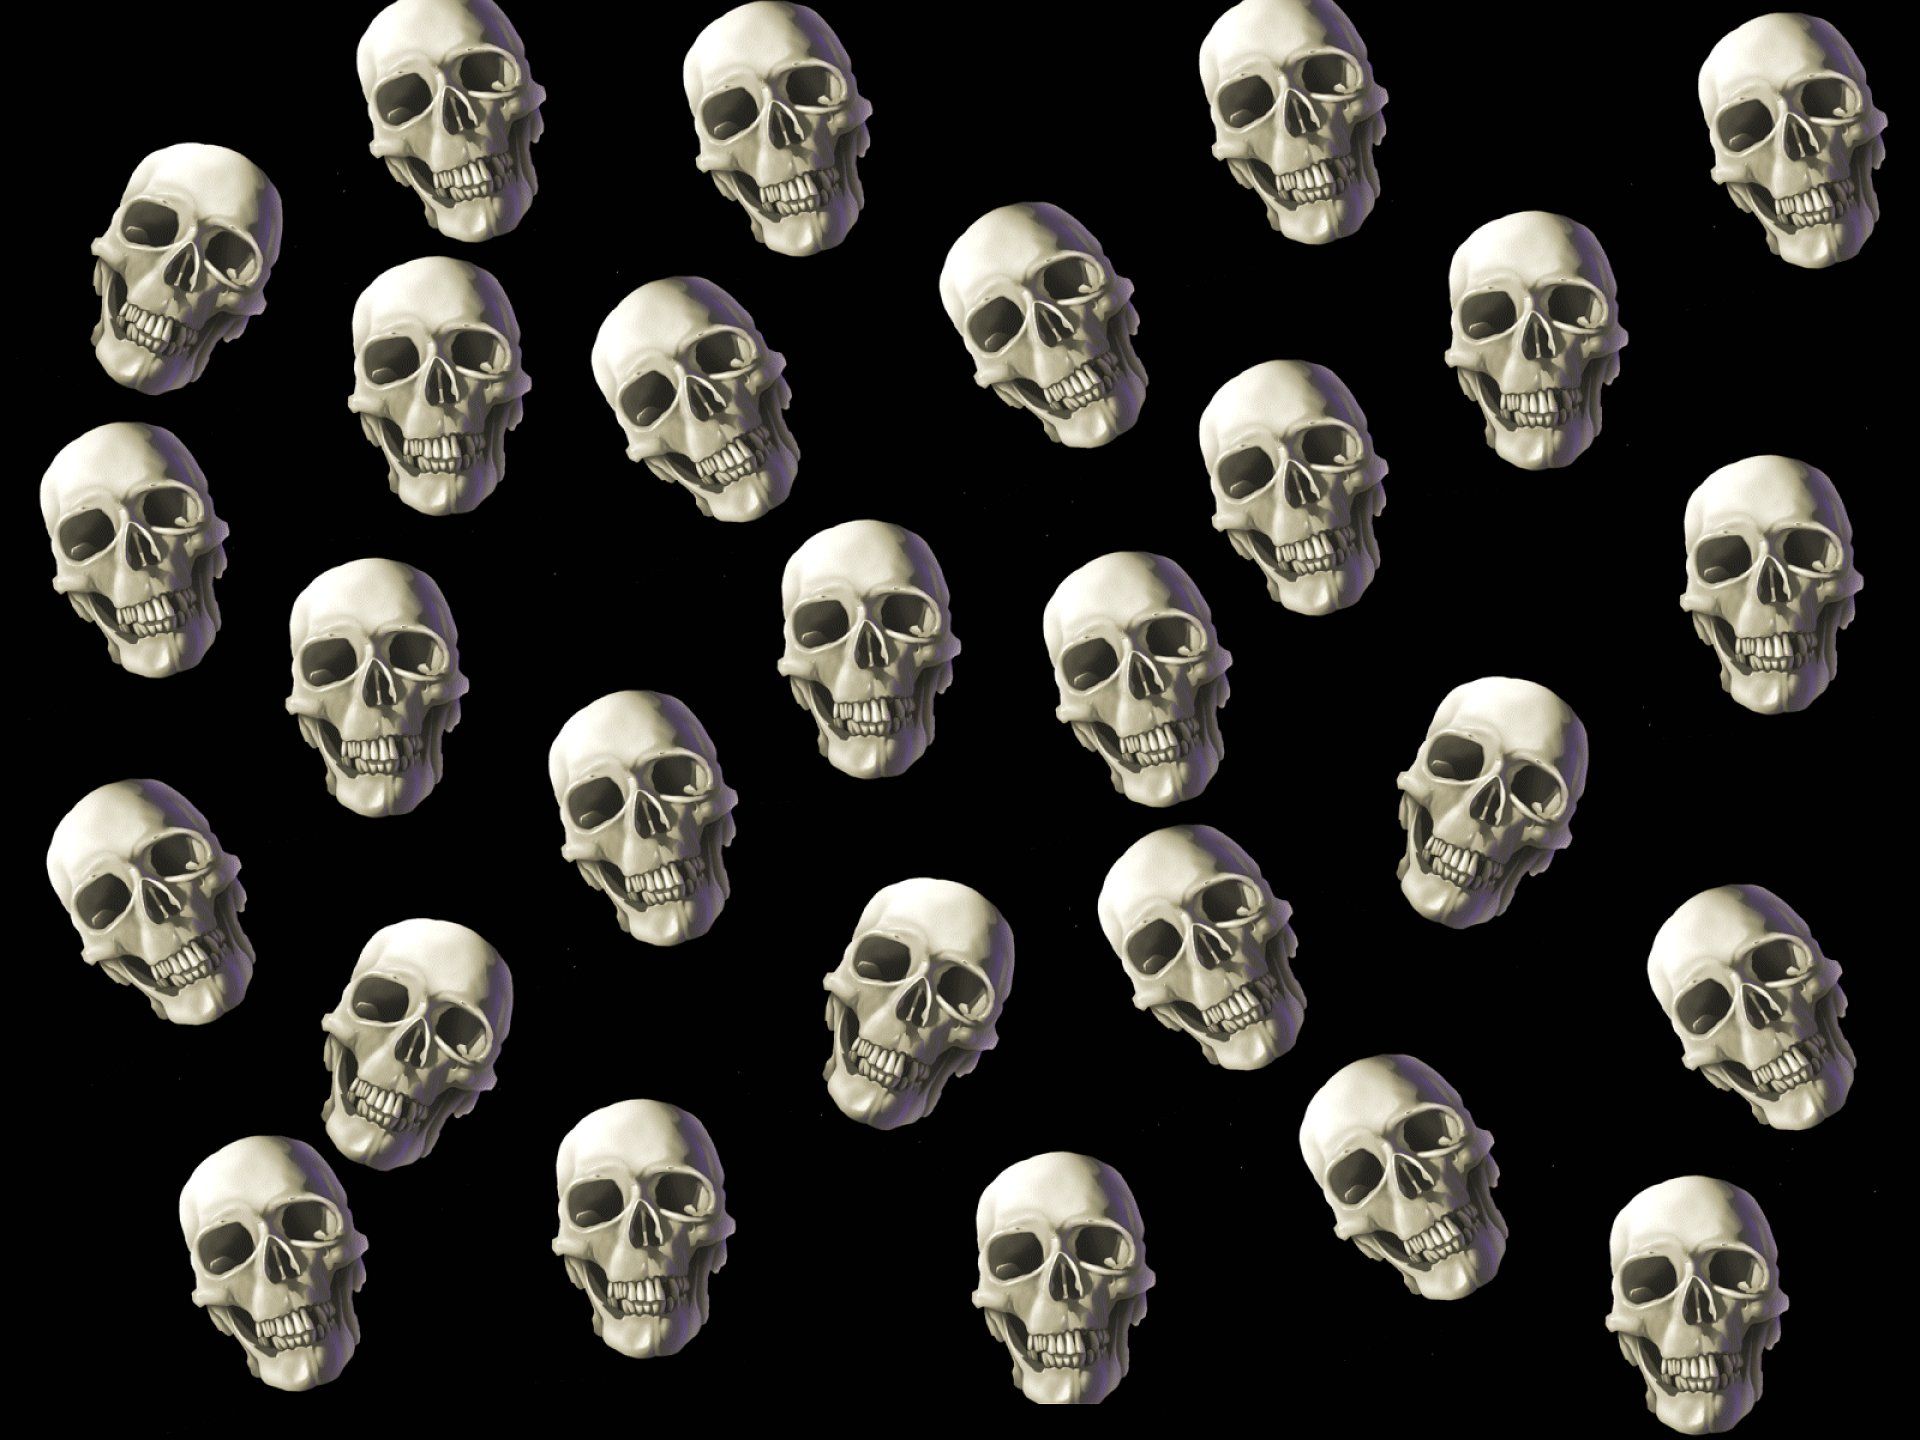 A pattern of skulls on black background - Skeleton, horror, skull